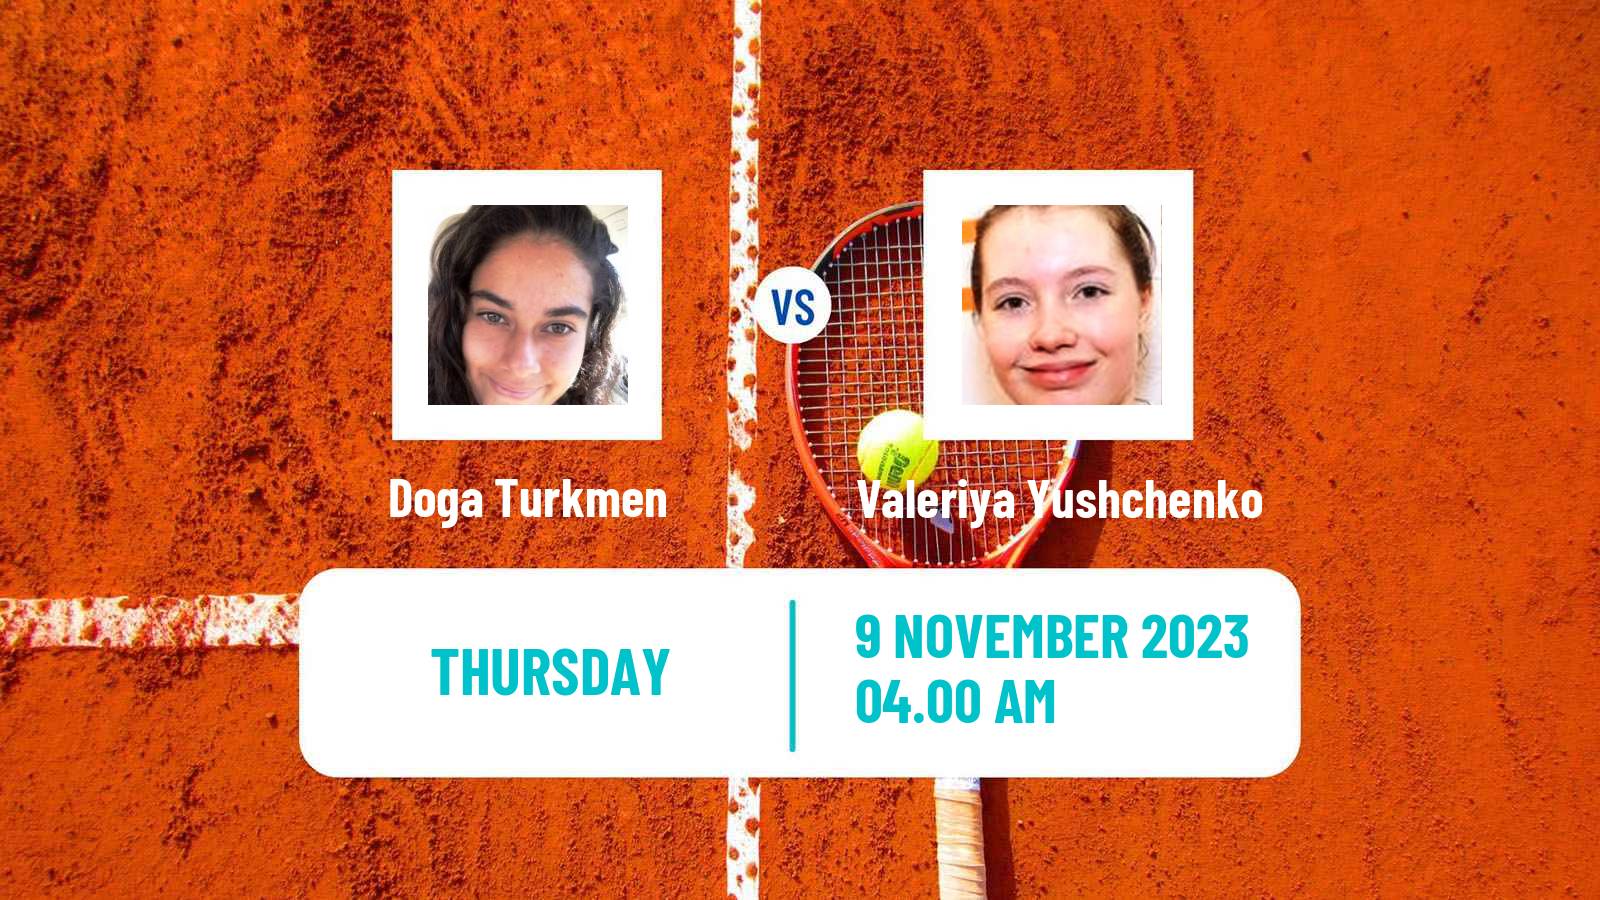 Tennis ITF W15 Antalya 17 Women Doga Turkmen - Valeriya Yushchenko